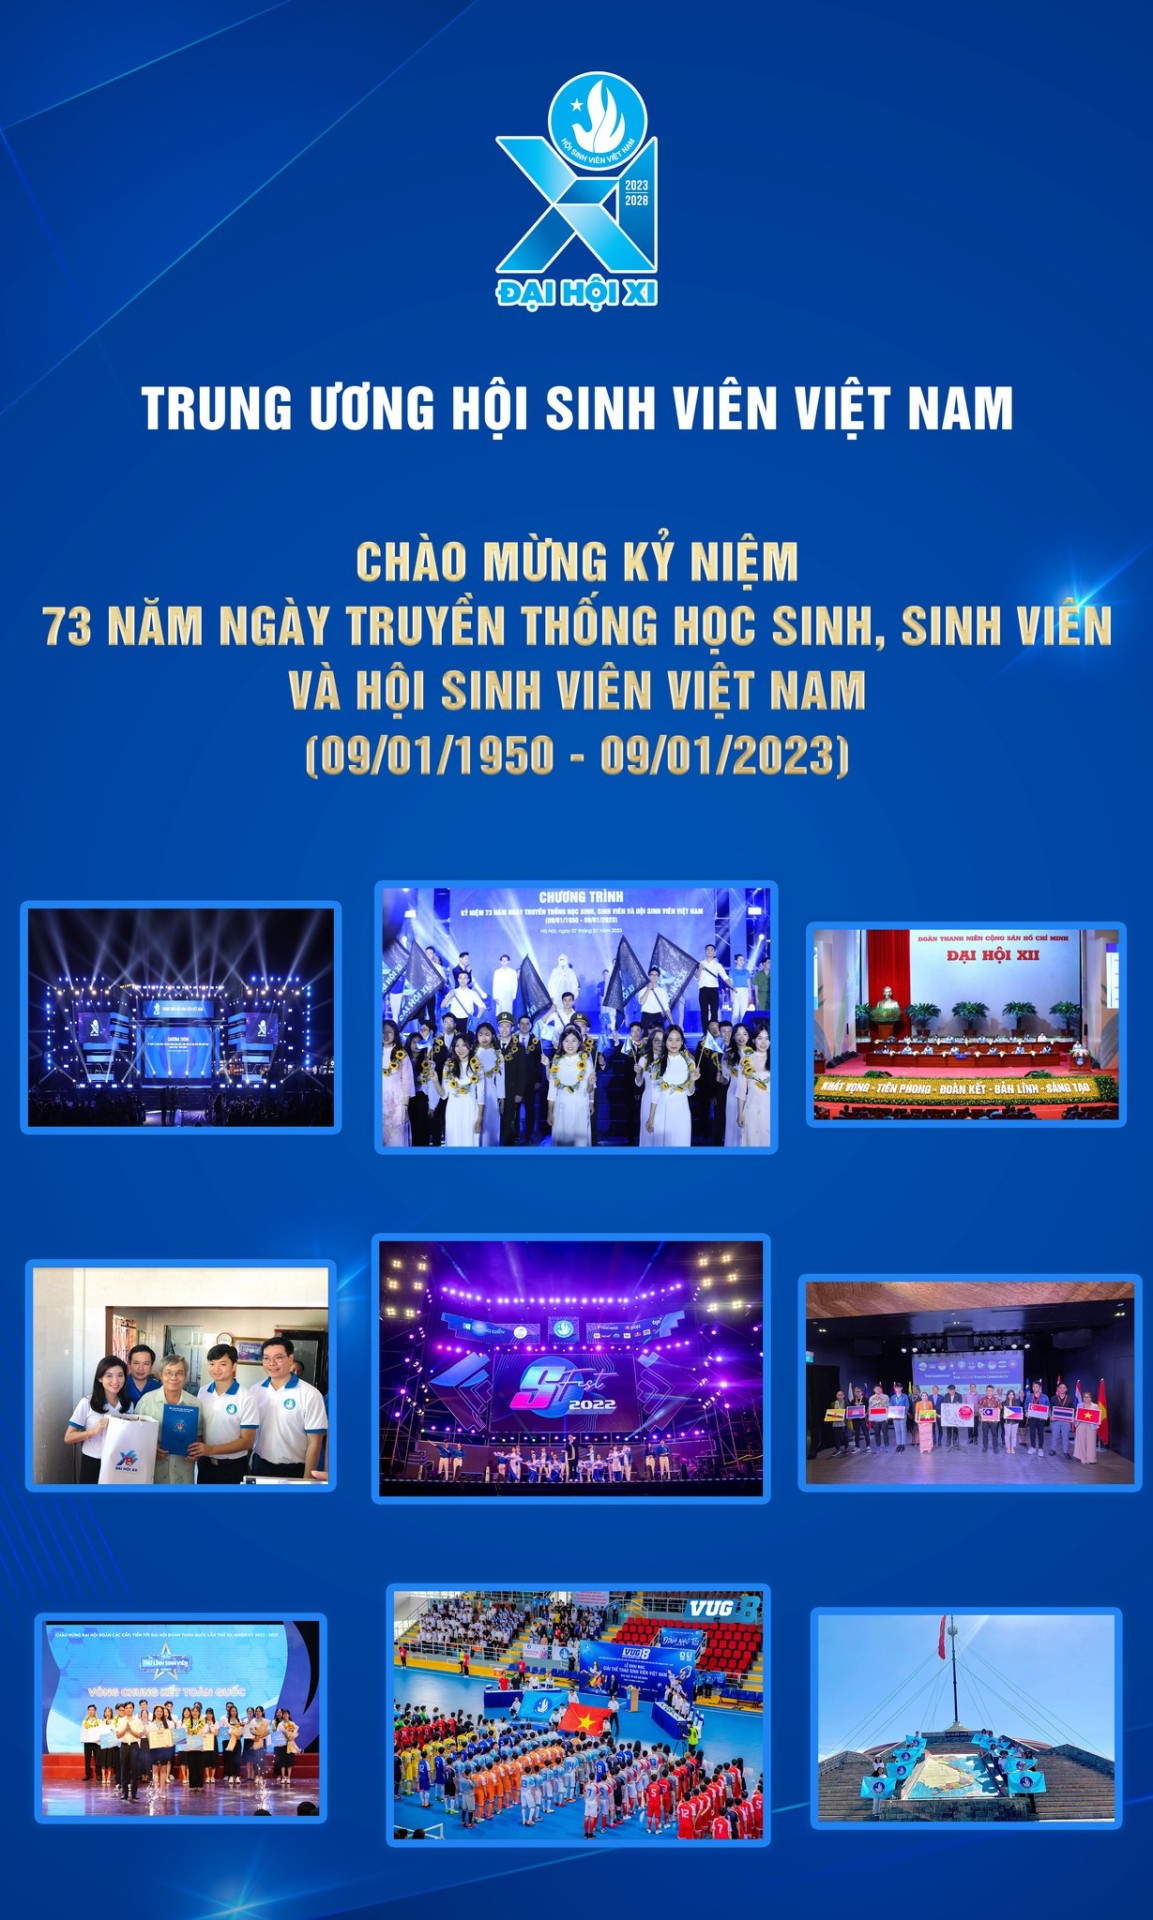 Chào mừng 73 năm ngày truyền thống học sinh sinh viên và Hội Sinh viên Việt Nam (09/01/1950 - 09/01/2023)